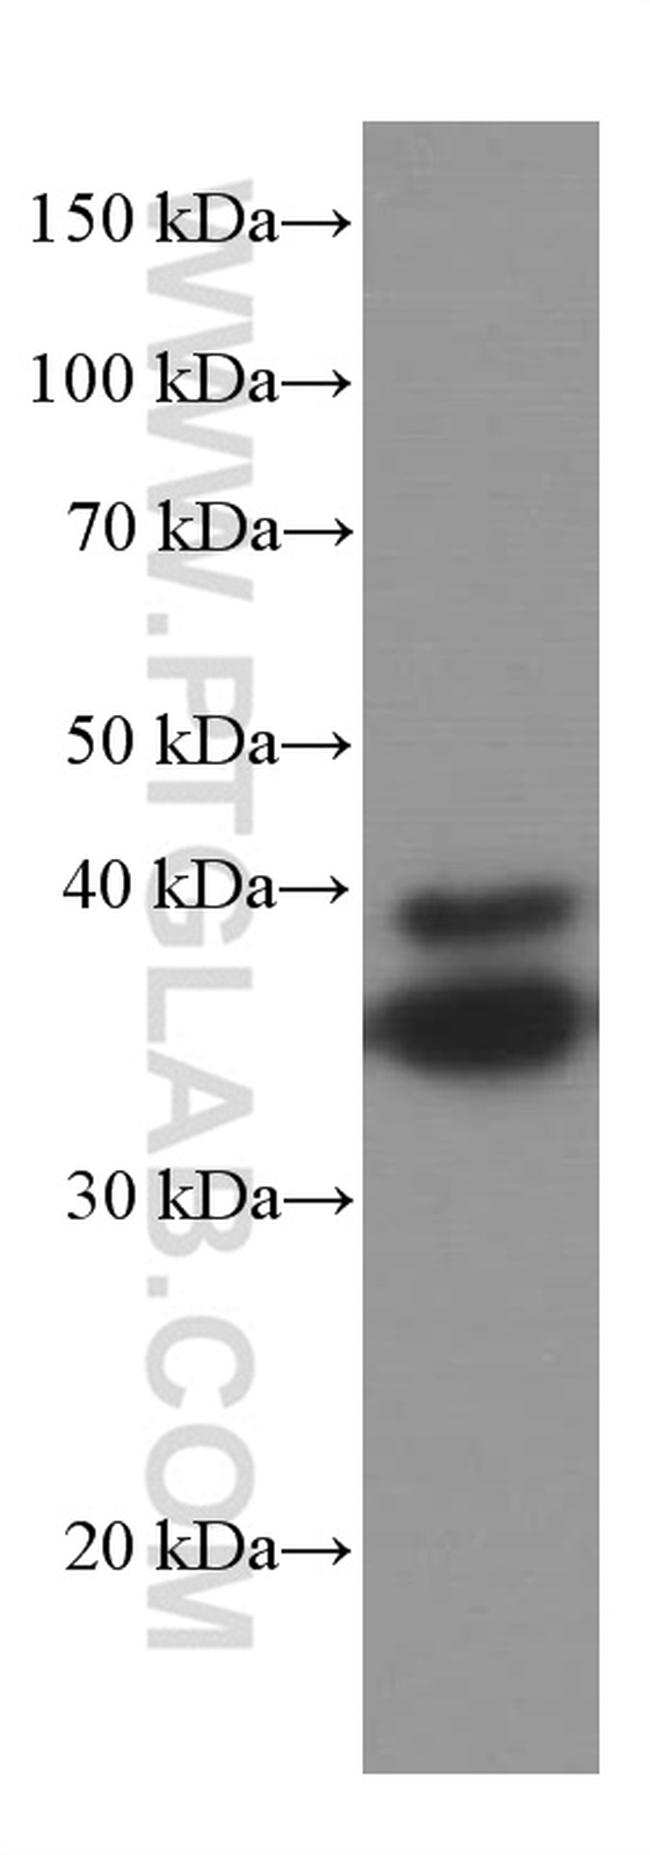 SIRT2 Antibody in Western Blot (WB)